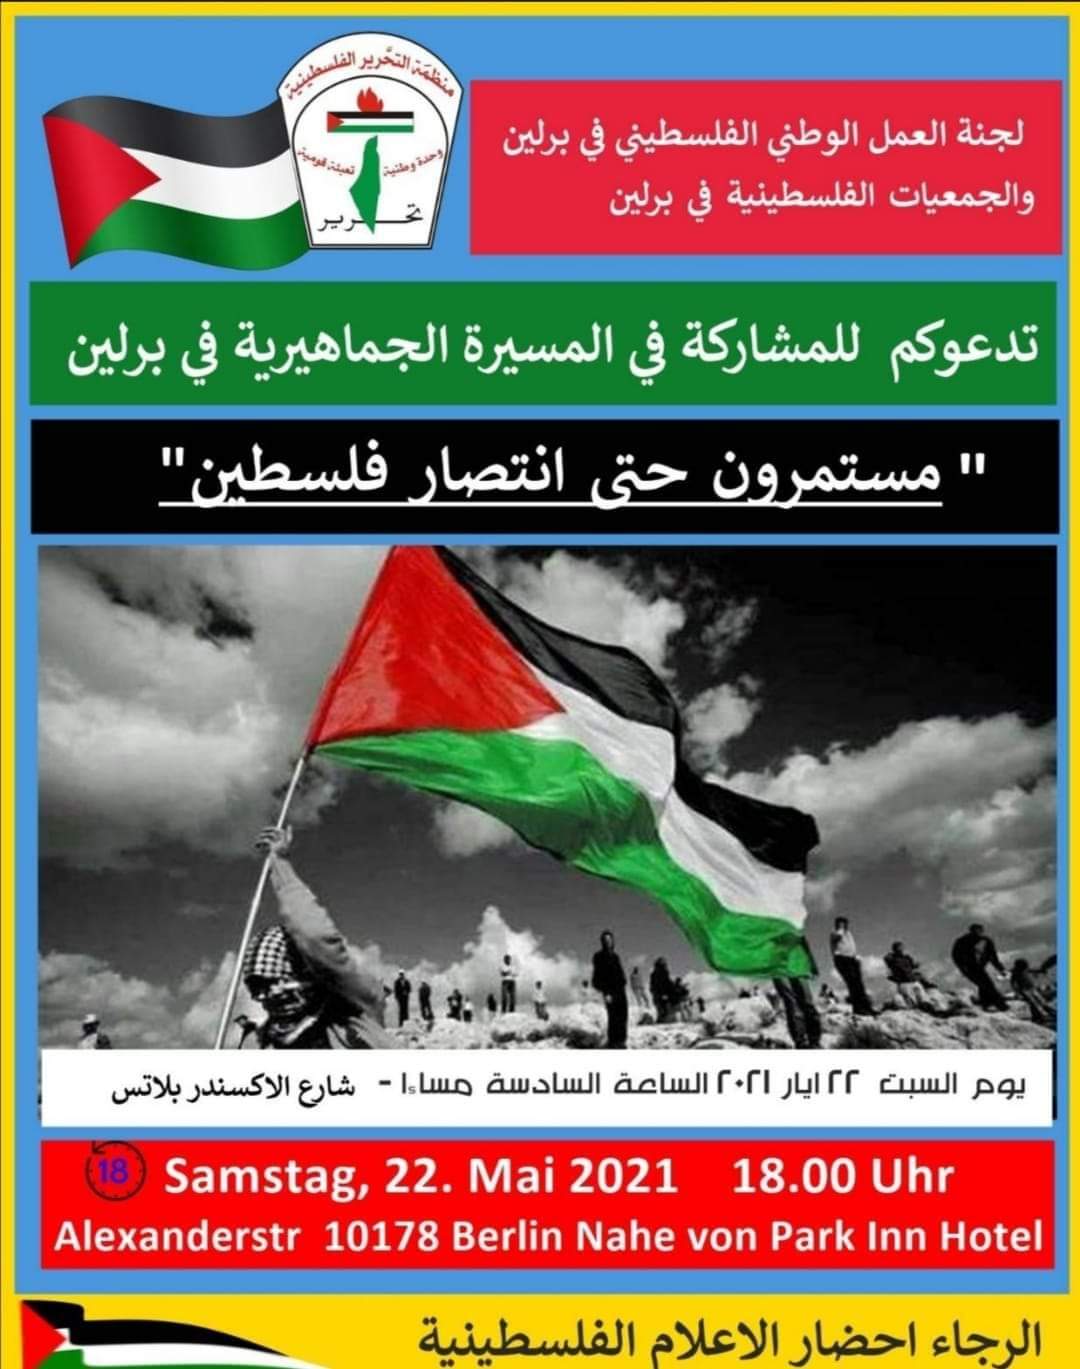 Solidarität mit dem palästinensischen Volk!